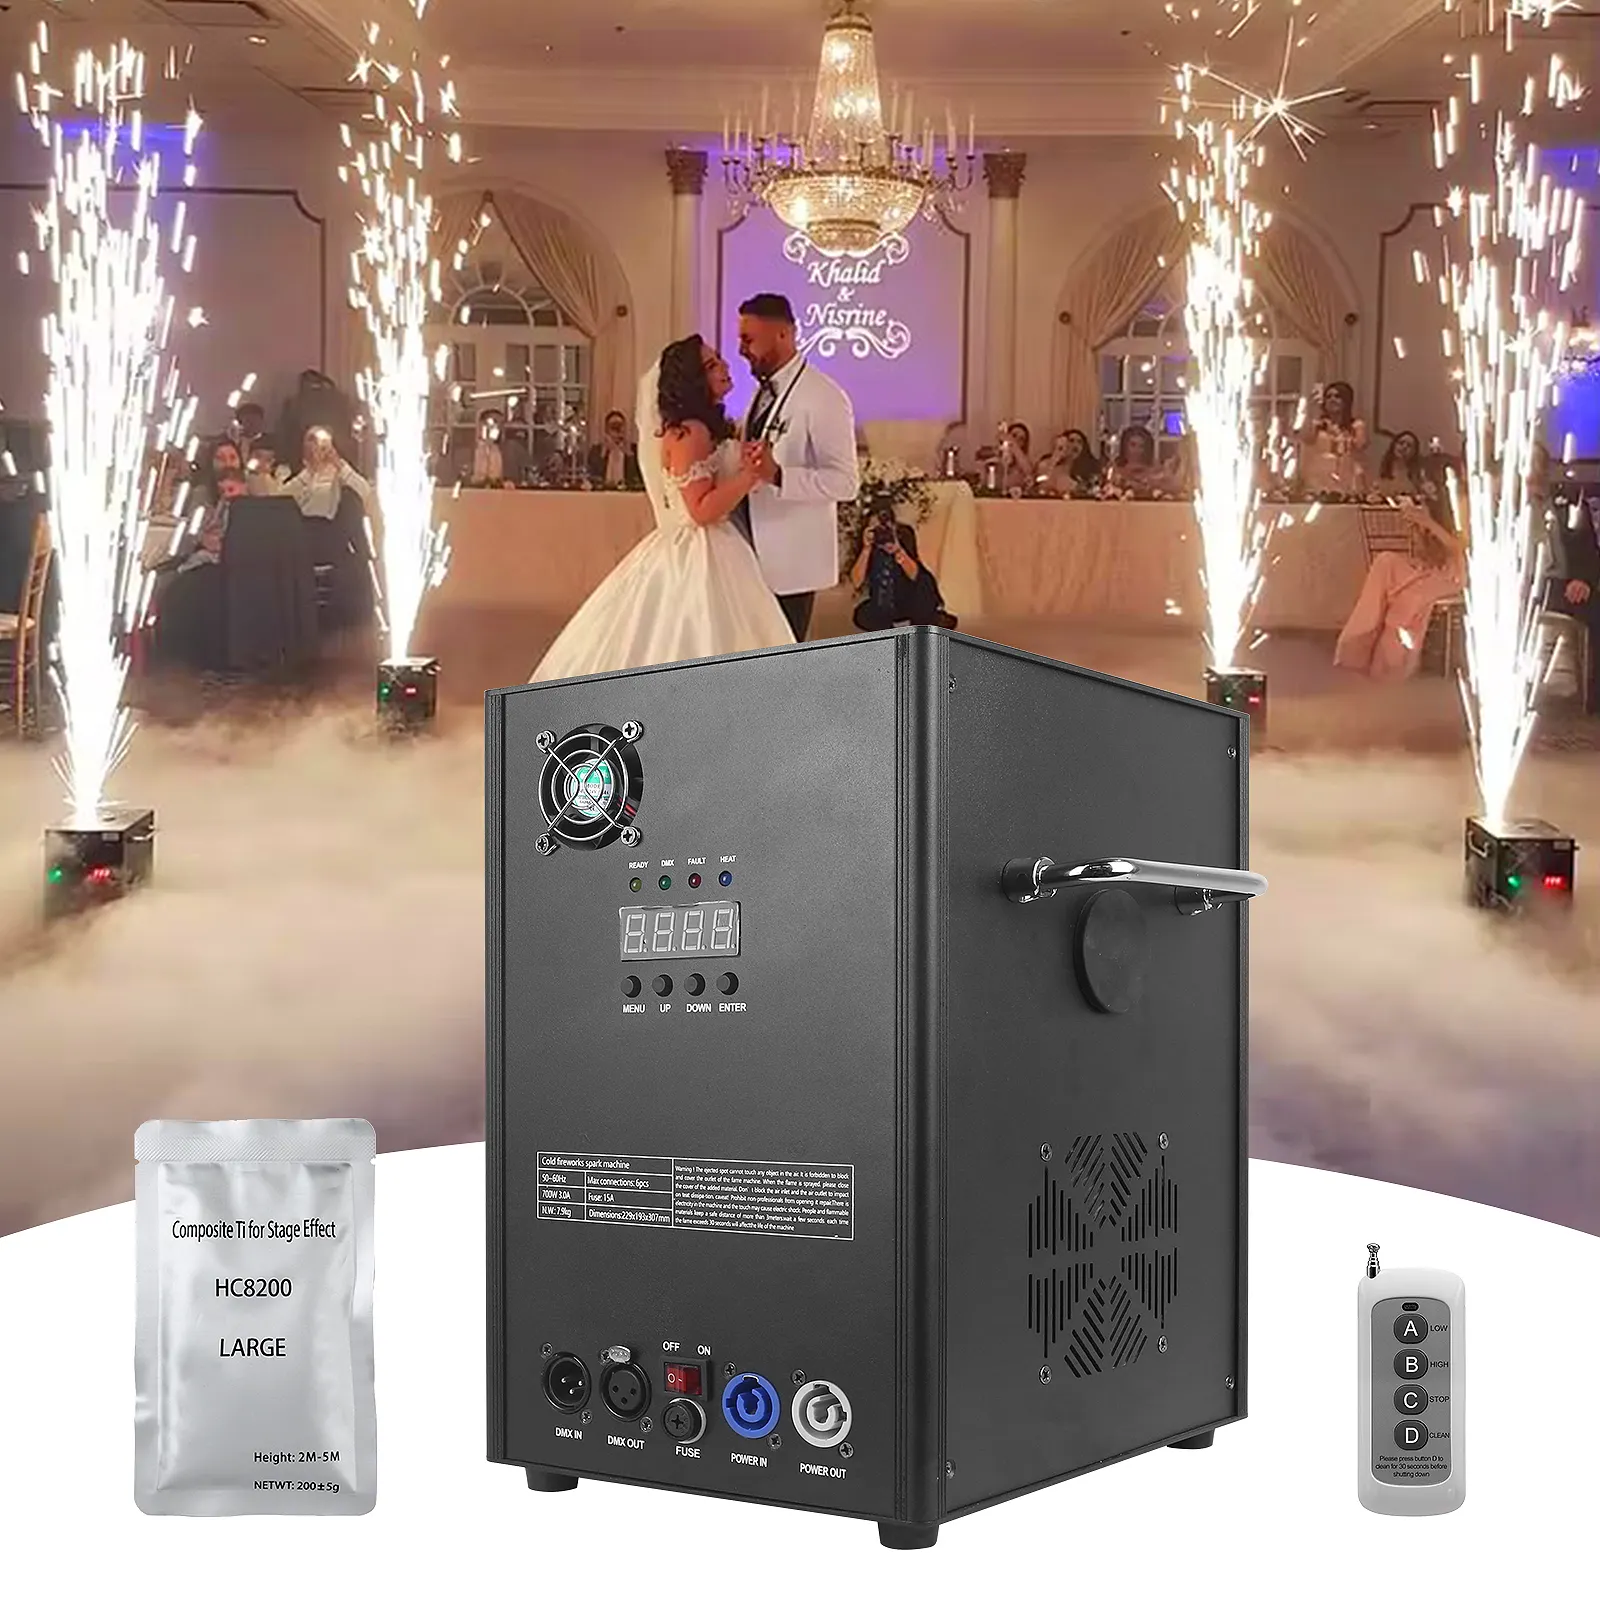 Grande stile freddo sparkler macchina fredda scintilla fontana di fuoco funziona per festa di nozze fase di controllo Wireless fiamma